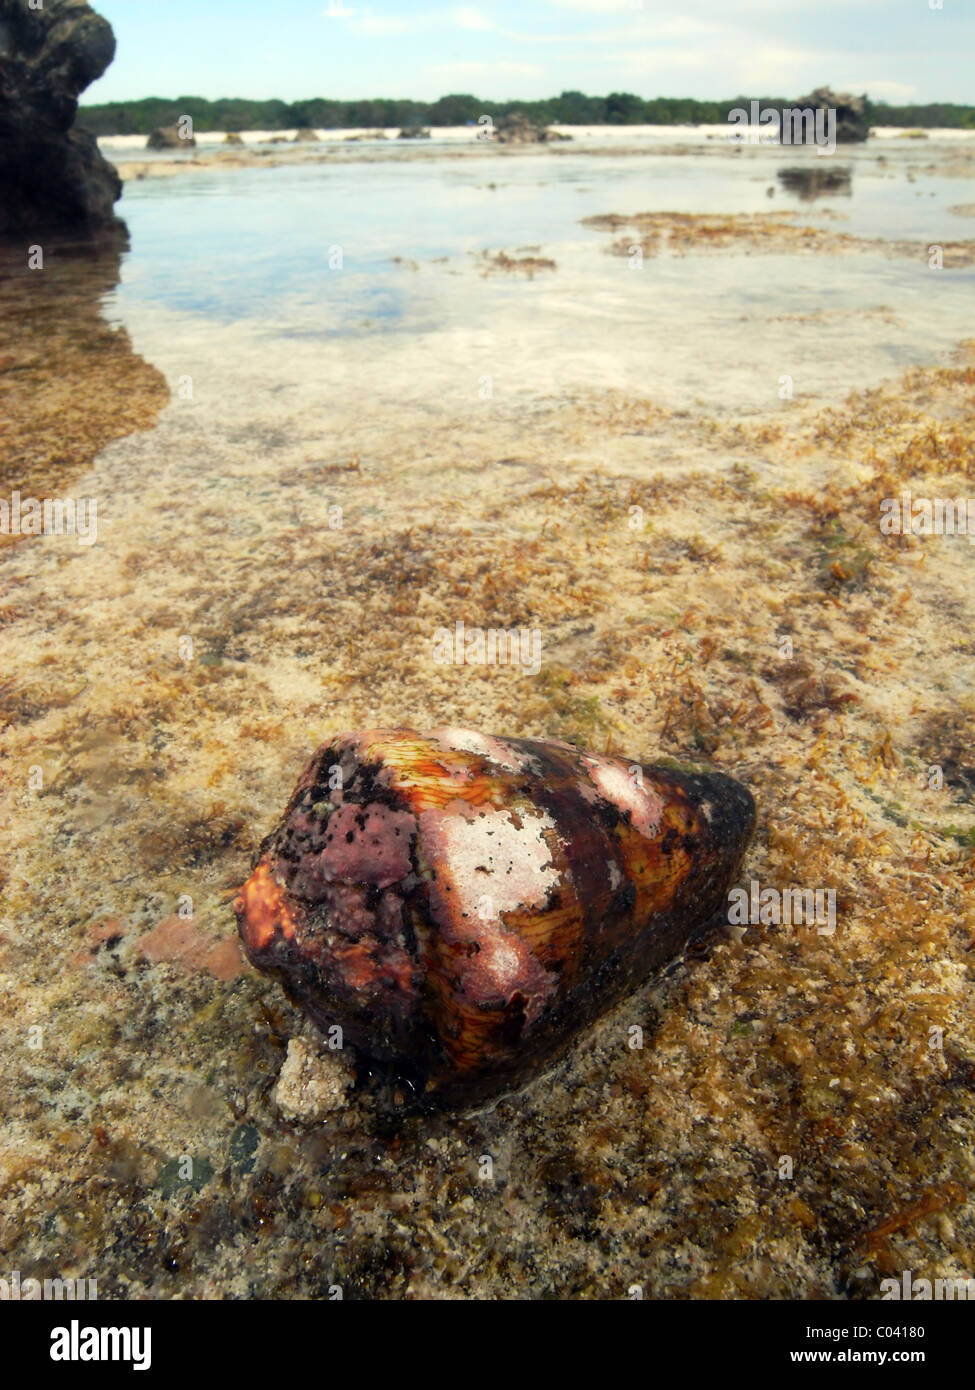 Cône venimeux Live shell (Conus sp.) sur le platier, North West Island, Great Barrier Reef Marine Park, Queensland, Australie Banque D'Images